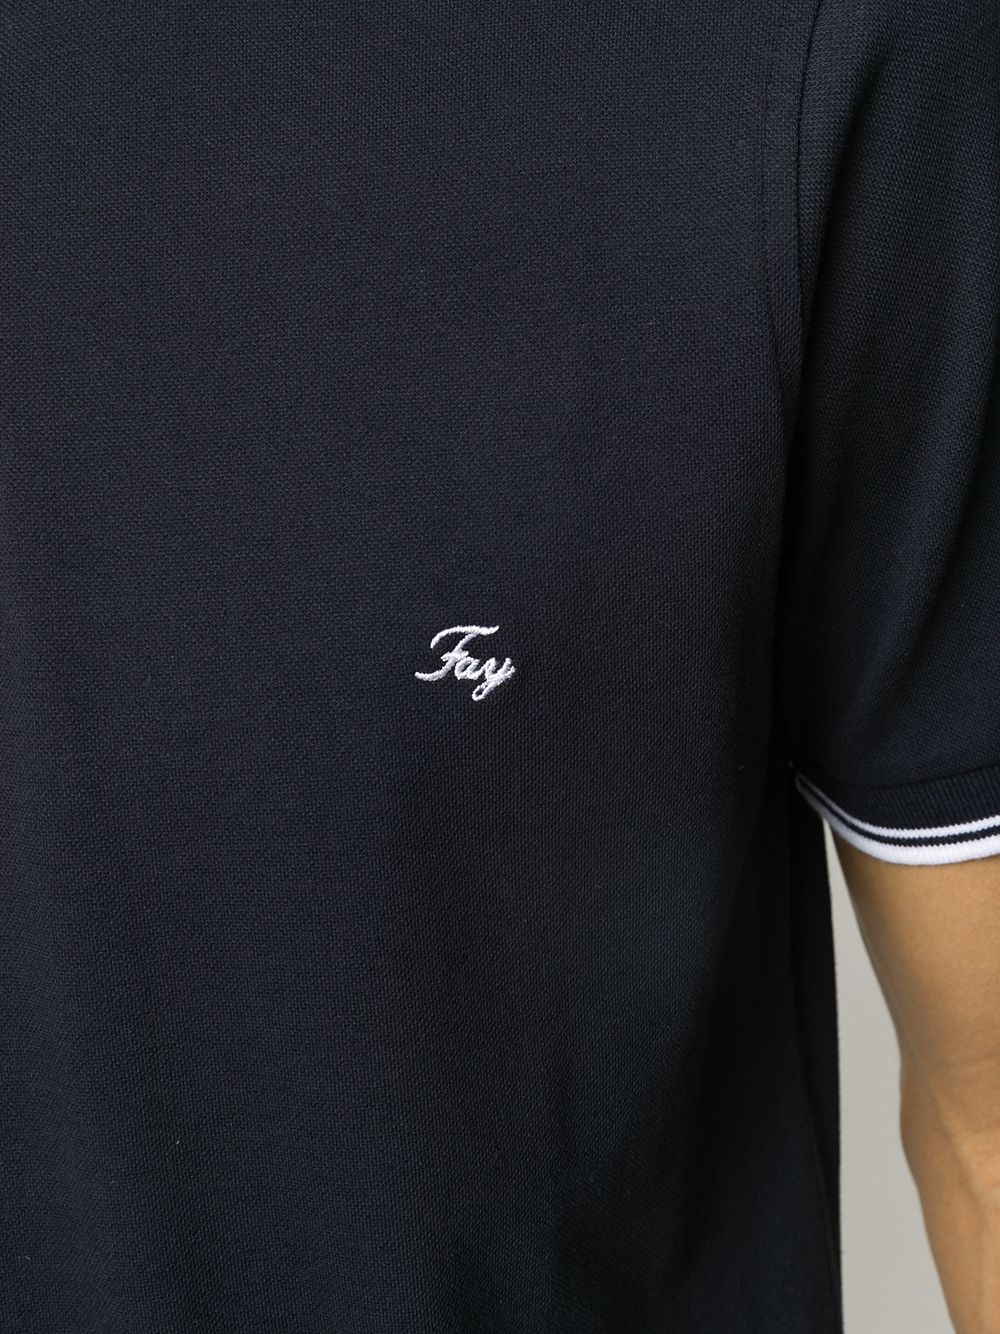 фото Fay рубашка-поло с вышитым логотипом